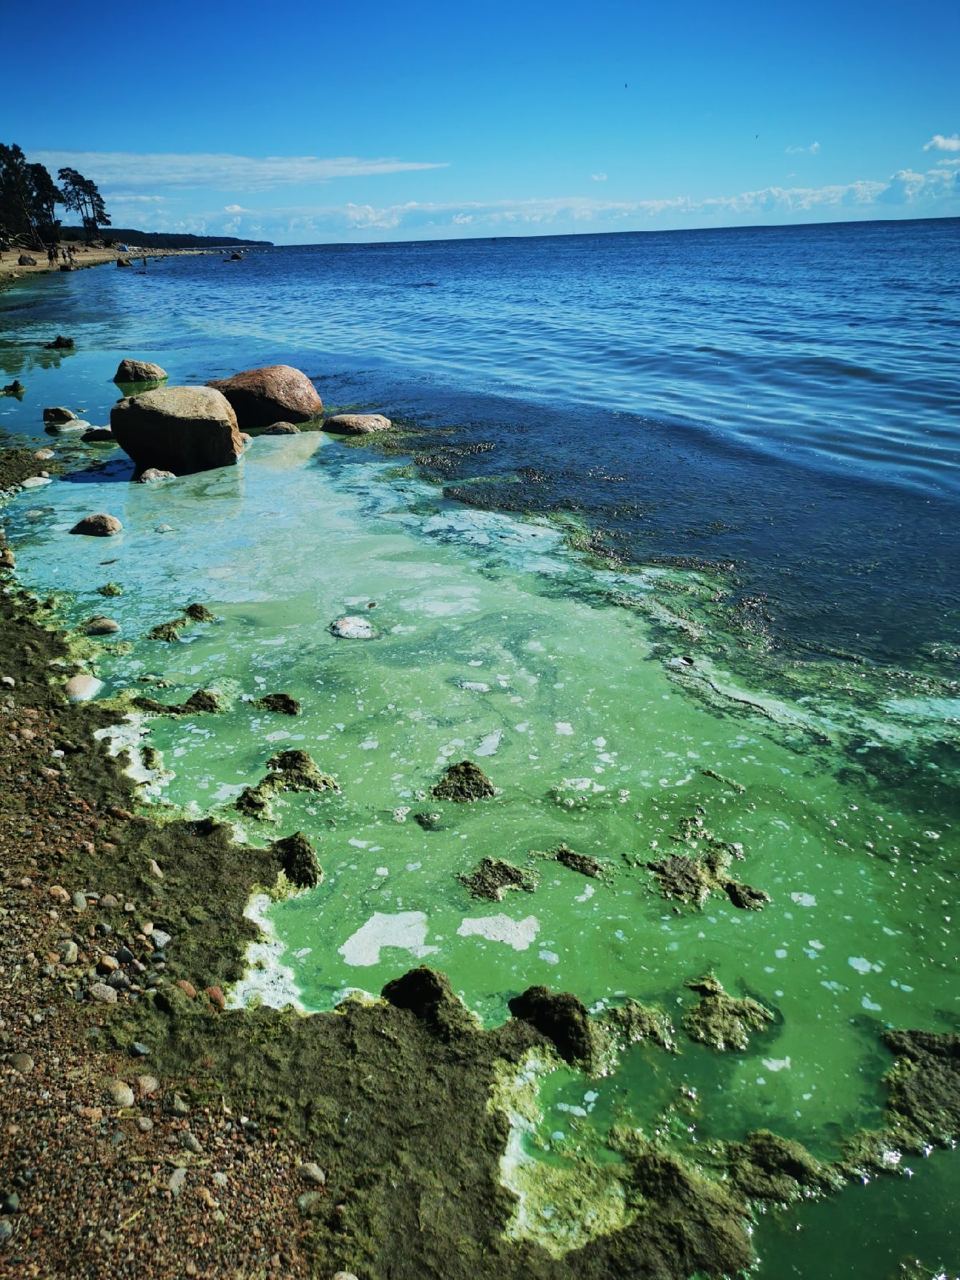 Финский залив позеленел из-за водорослей. Почему очистить его не получится и опасно ли купание в такой воде?